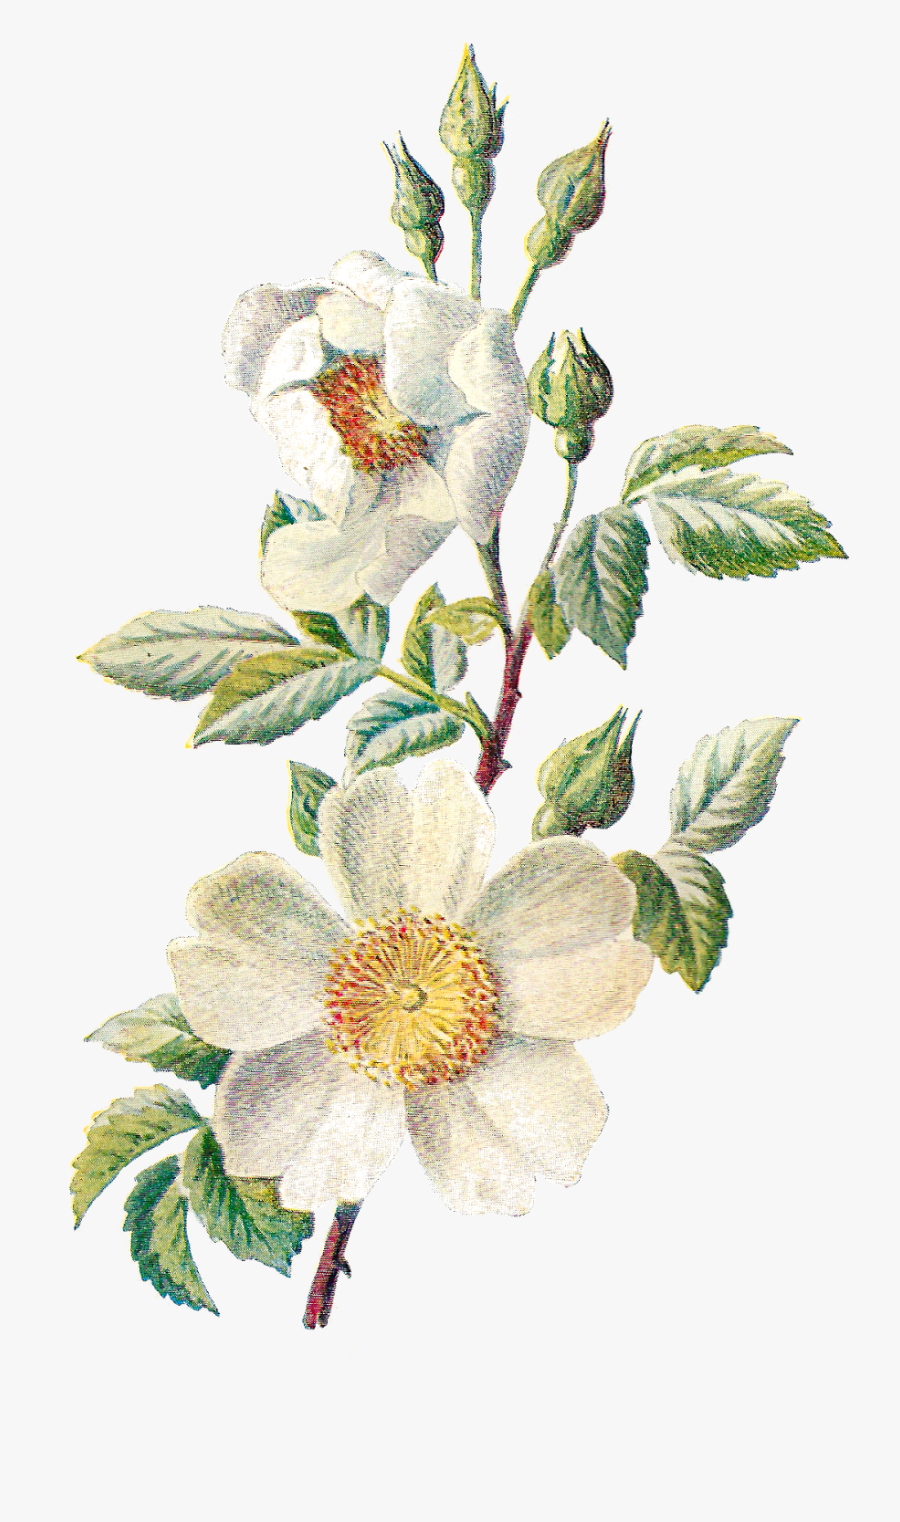 Antique Images Stock Botanical - Vintage Flower Illustration Png, Transparent Clipart